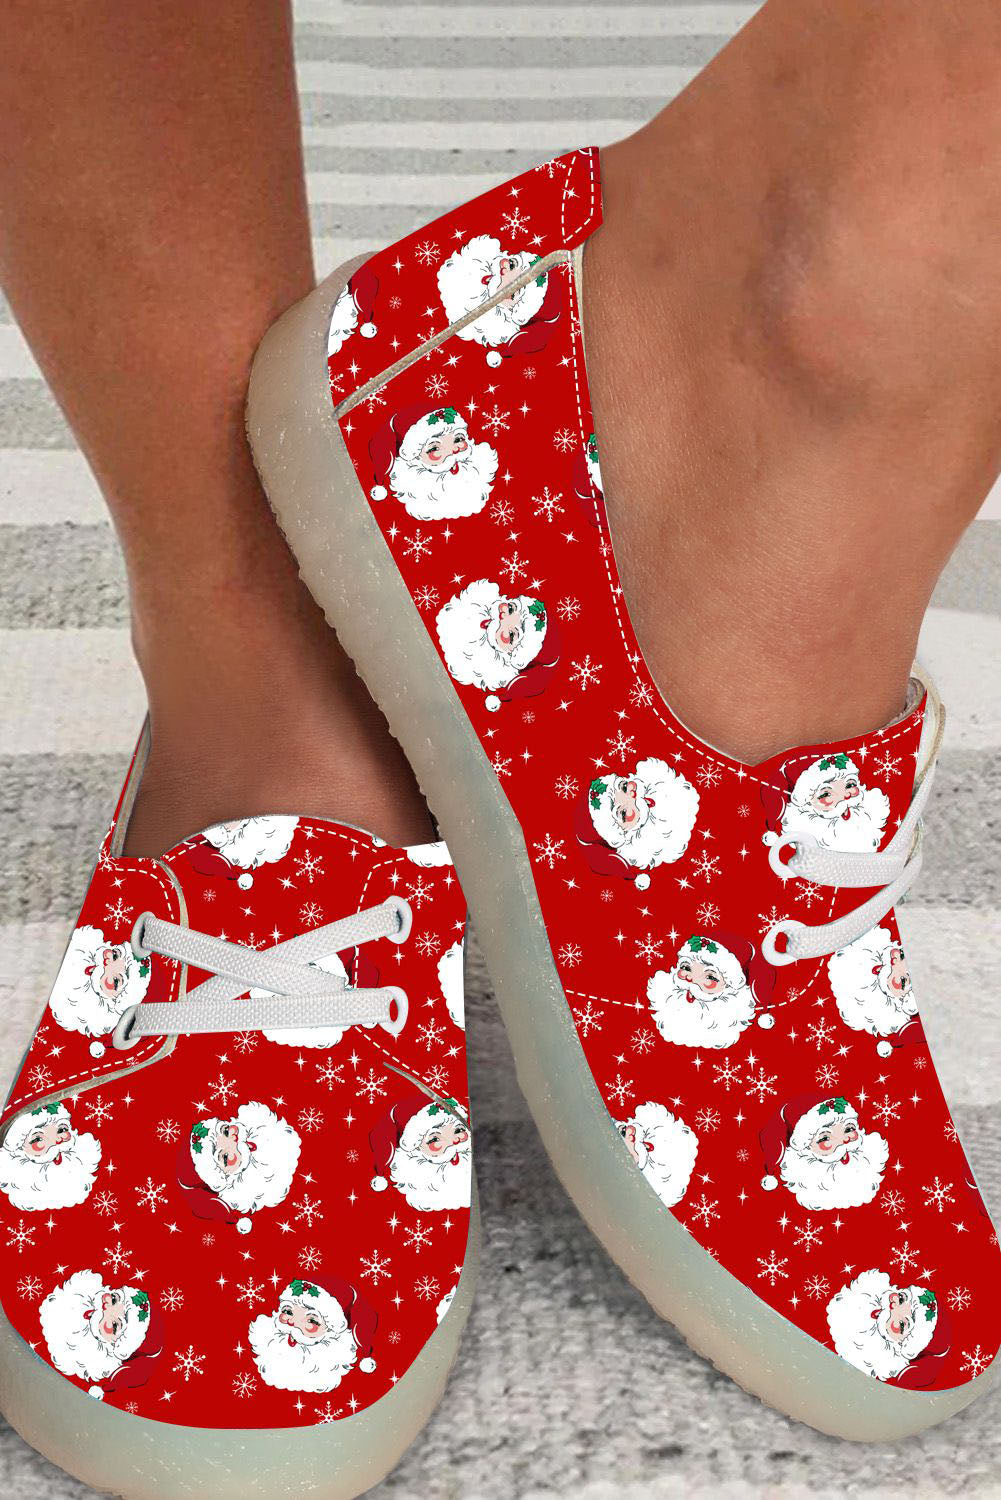 BH021870-3-38, BH021870-3-39, BH021870-3-40, BH021870-3-41, BH021870-3-42, BH021870-3-43, Red Womens Slip On Sneakers Christmas Santa Claus Casual Canvas Shoes